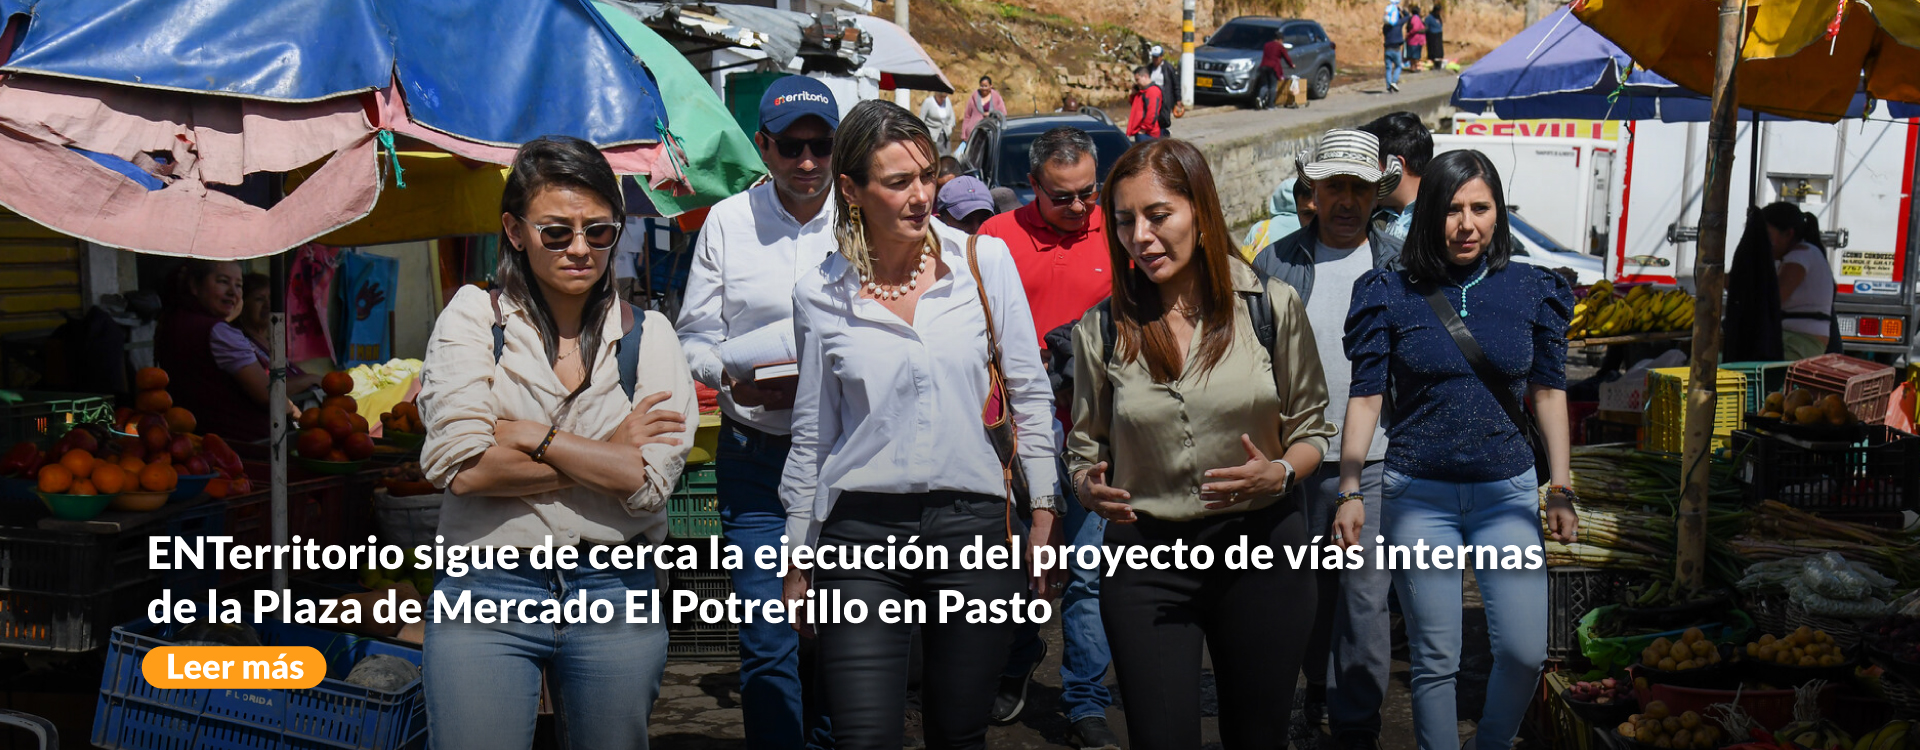 ENTerritorio sigue de cerca la ejecución del proyecto de vías internas de la Plaza de Mercado El Potrerillo en Pasto